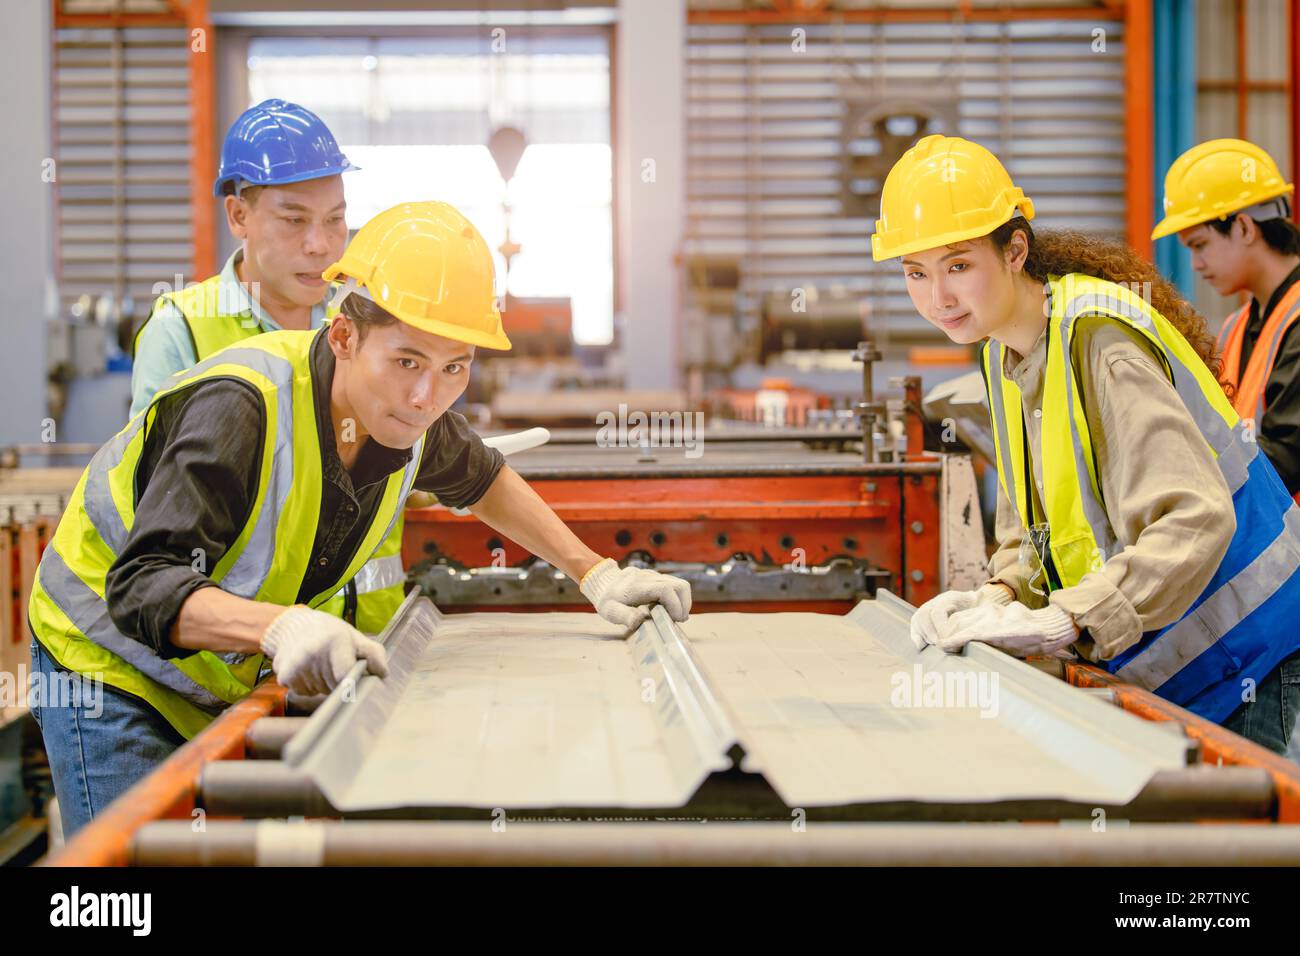 Les travailleurs asiatiques travaillant dans la fabrication de tôles contribuent à travailler ensemble en tant que travail d'équipe. Banque D'Images